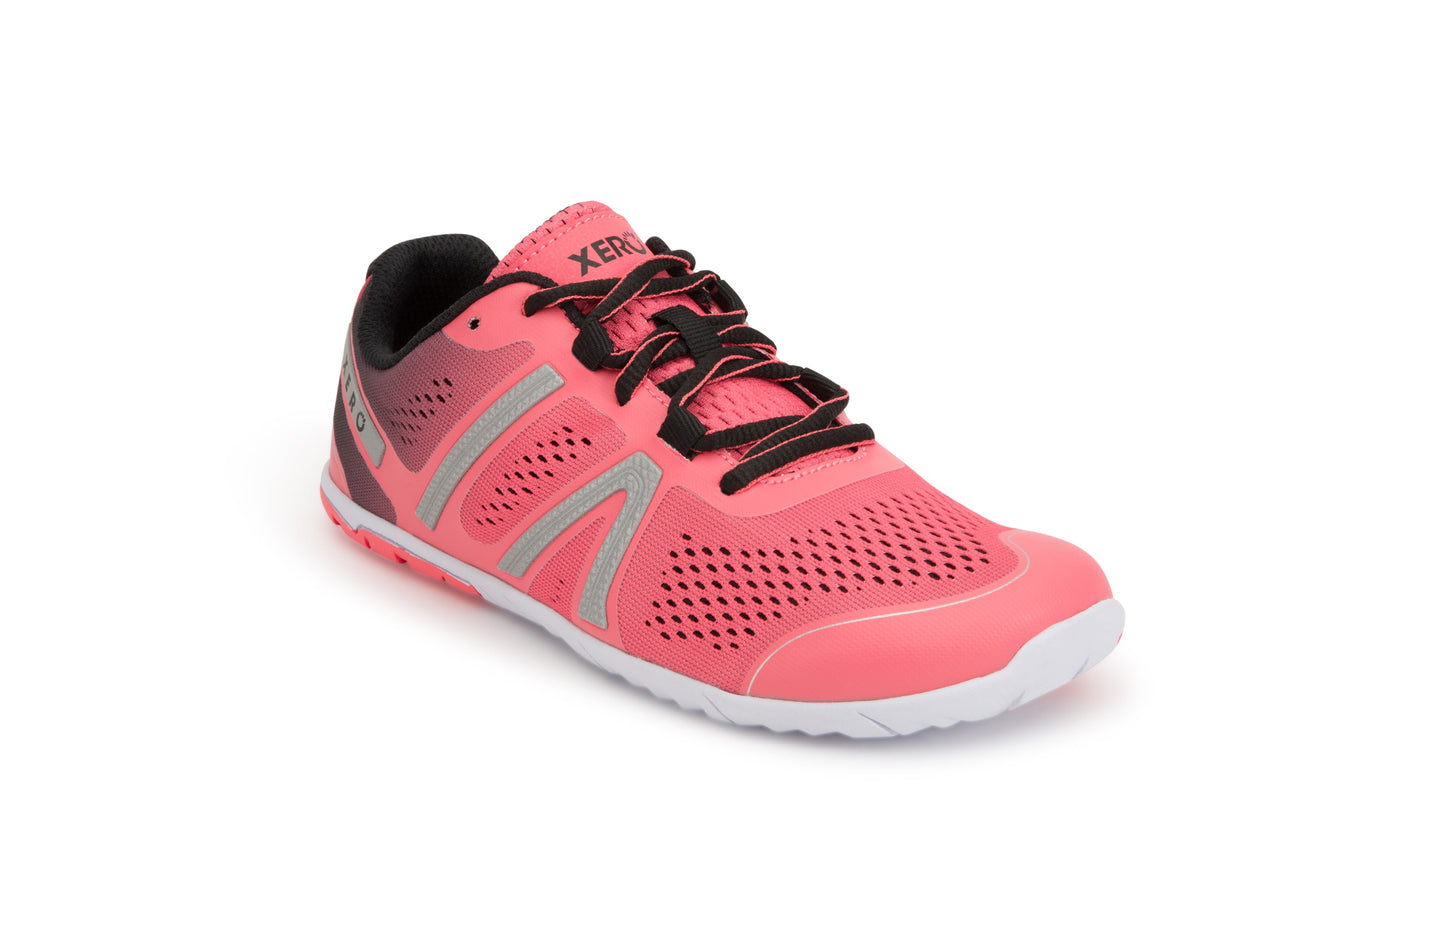 Xero Shoes HFS Womens barfods træningssko/løbesko til kvinder i farven coral hush, vinklet